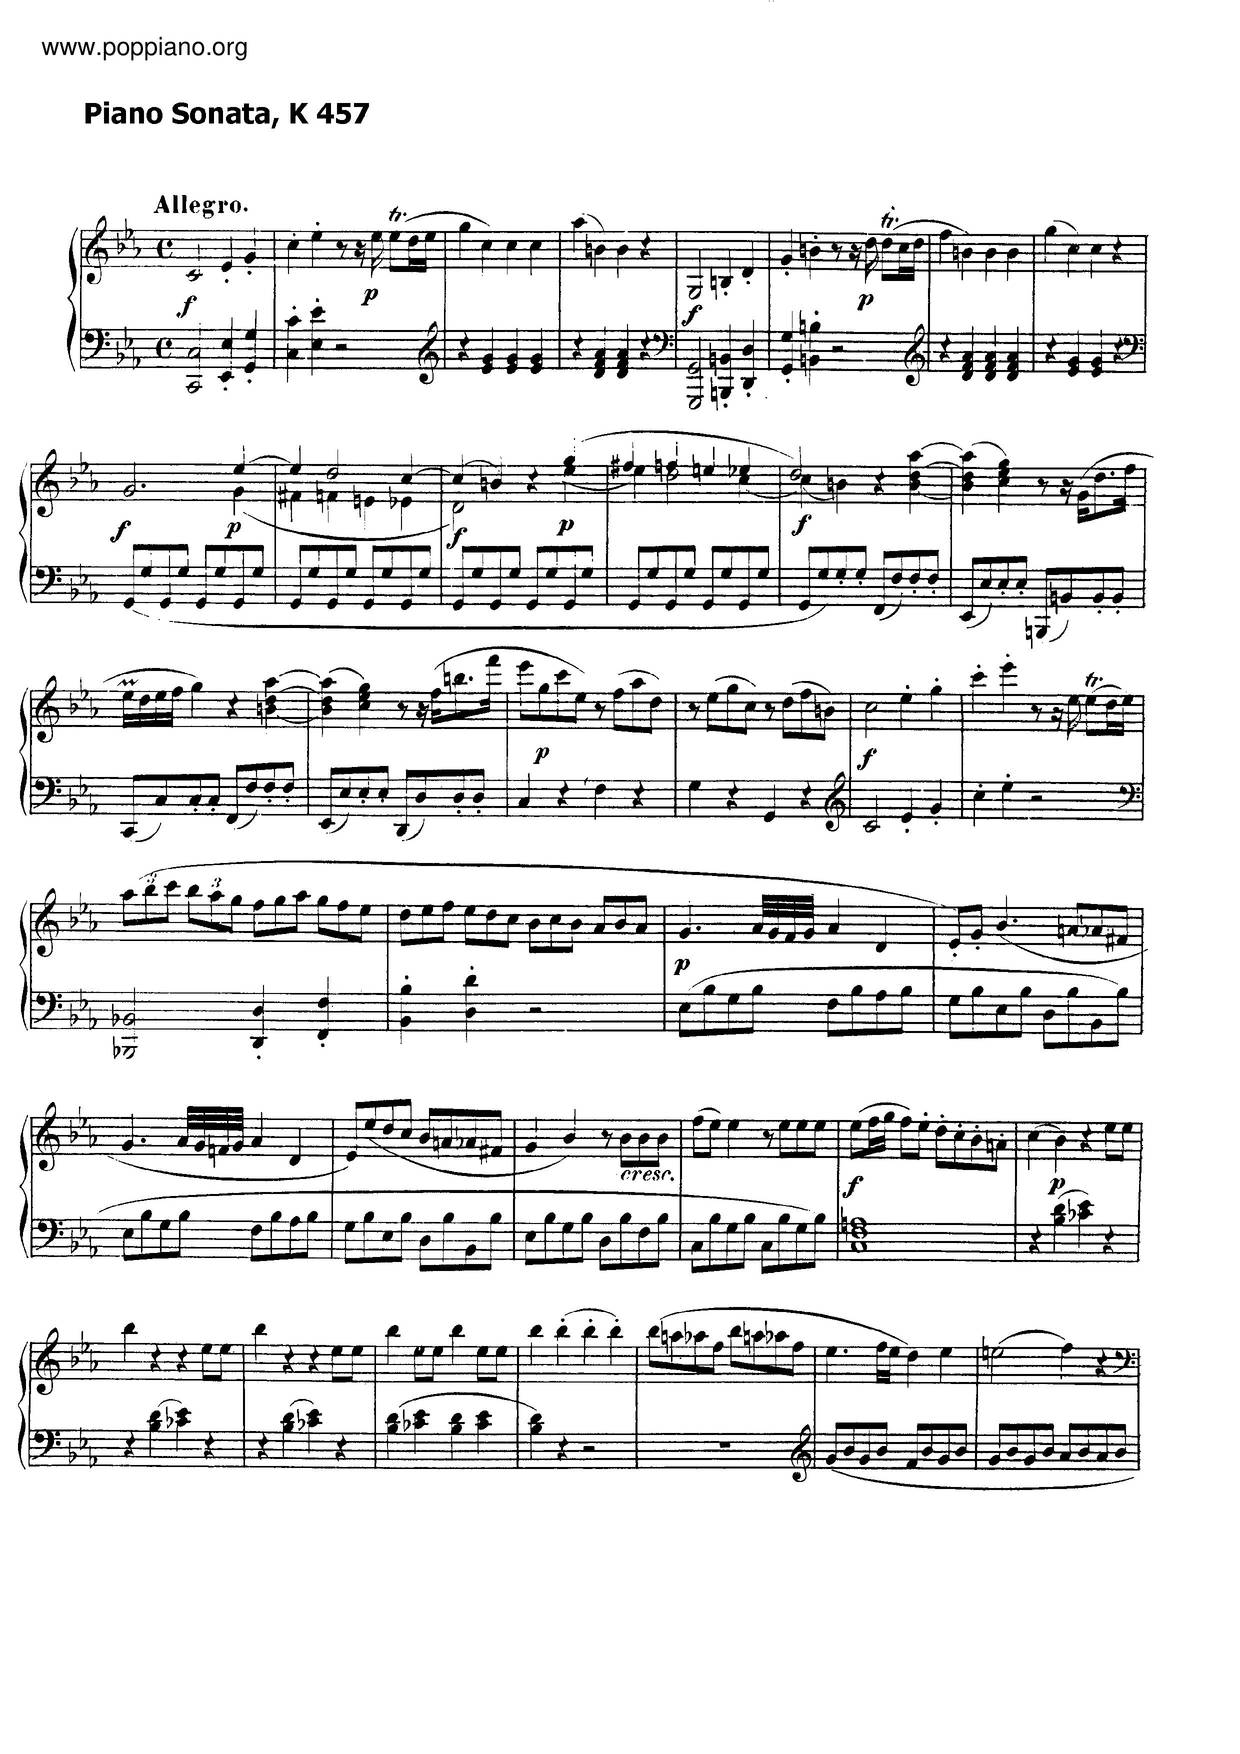 Piano Sonata No. 14, K. 457 Score